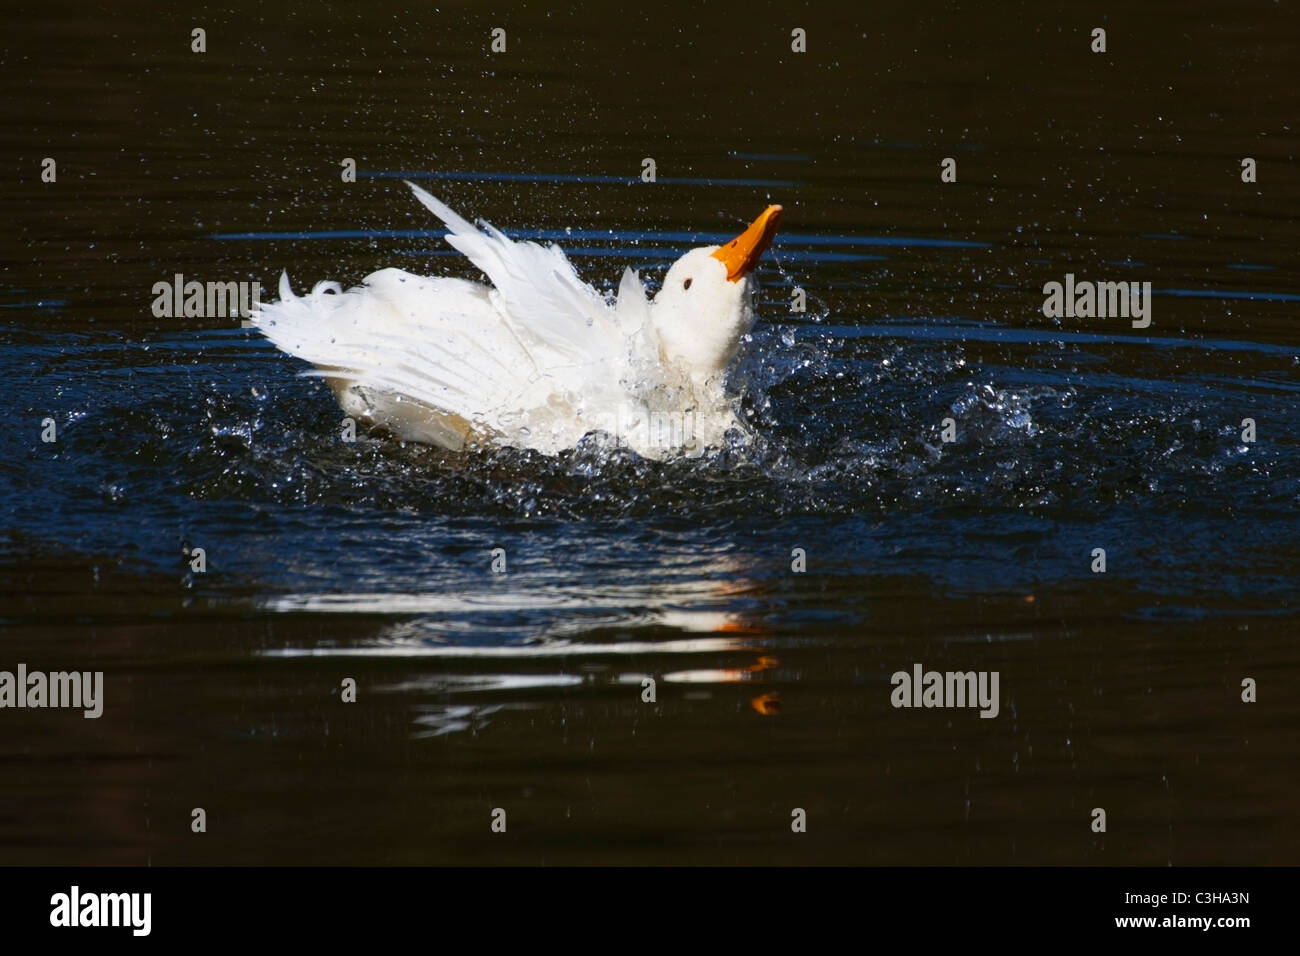 Weiße Ente mit orange Schnabel plantschen (ducking und Tauchen) im Wasser beim Baden Stockfoto